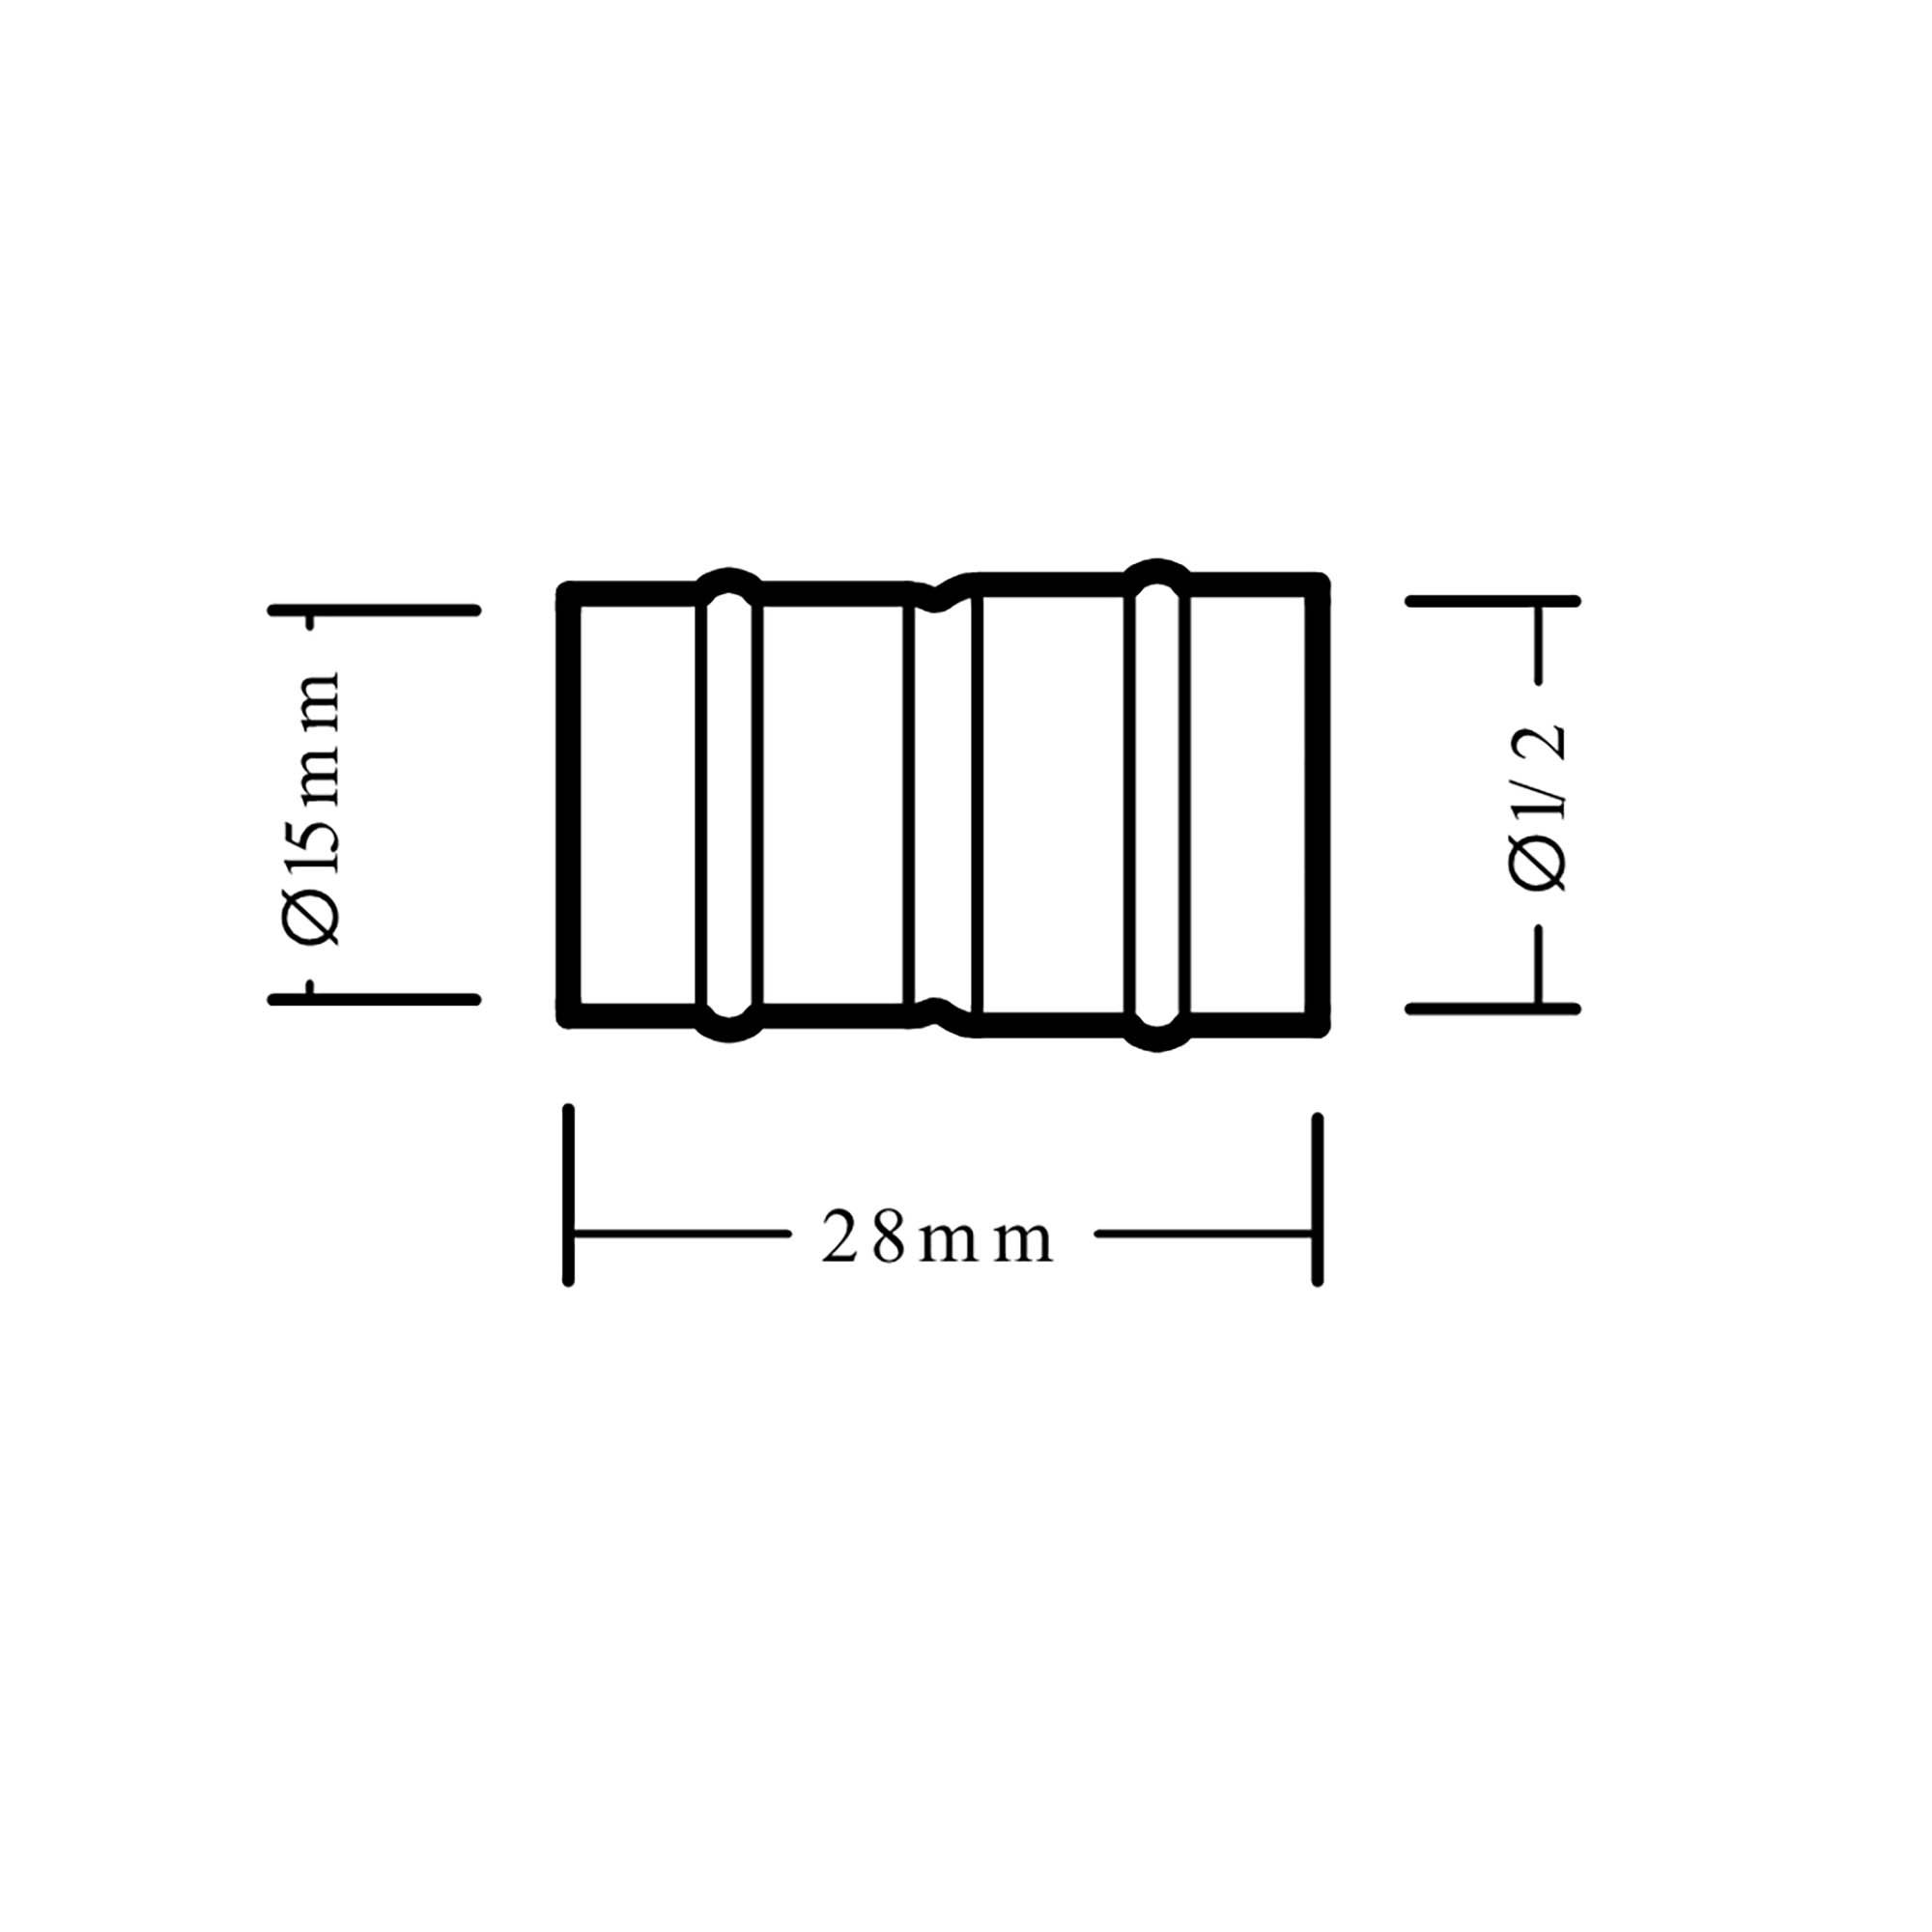 Plumbsure Solder ring Adaptor (Dia)15mm, Pack of 2